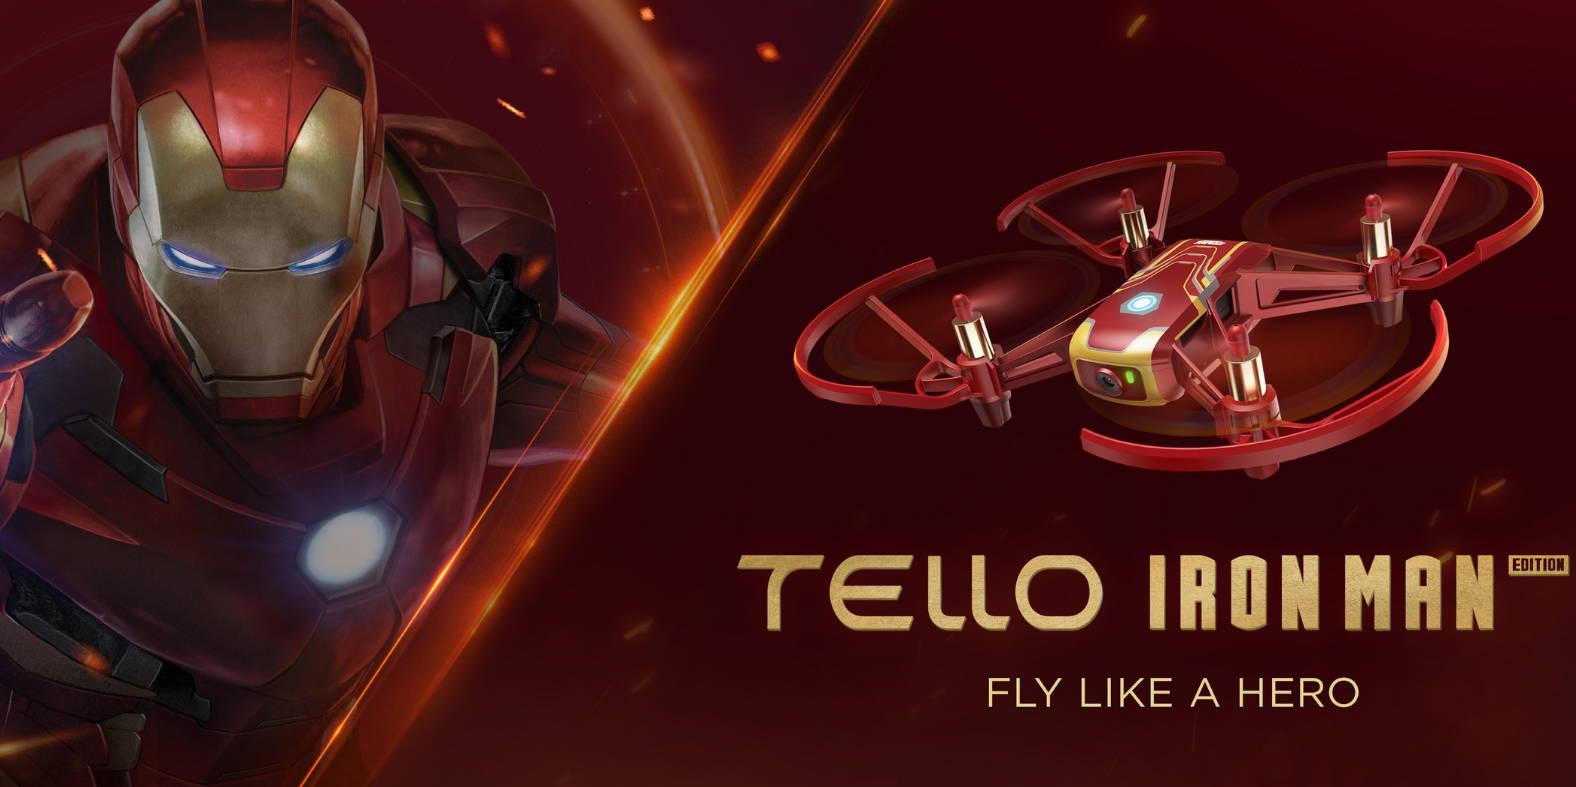 DJI, Ryze, Disney & Marvel Announce New Tello Iron Man Edition | Fly Like A Hero